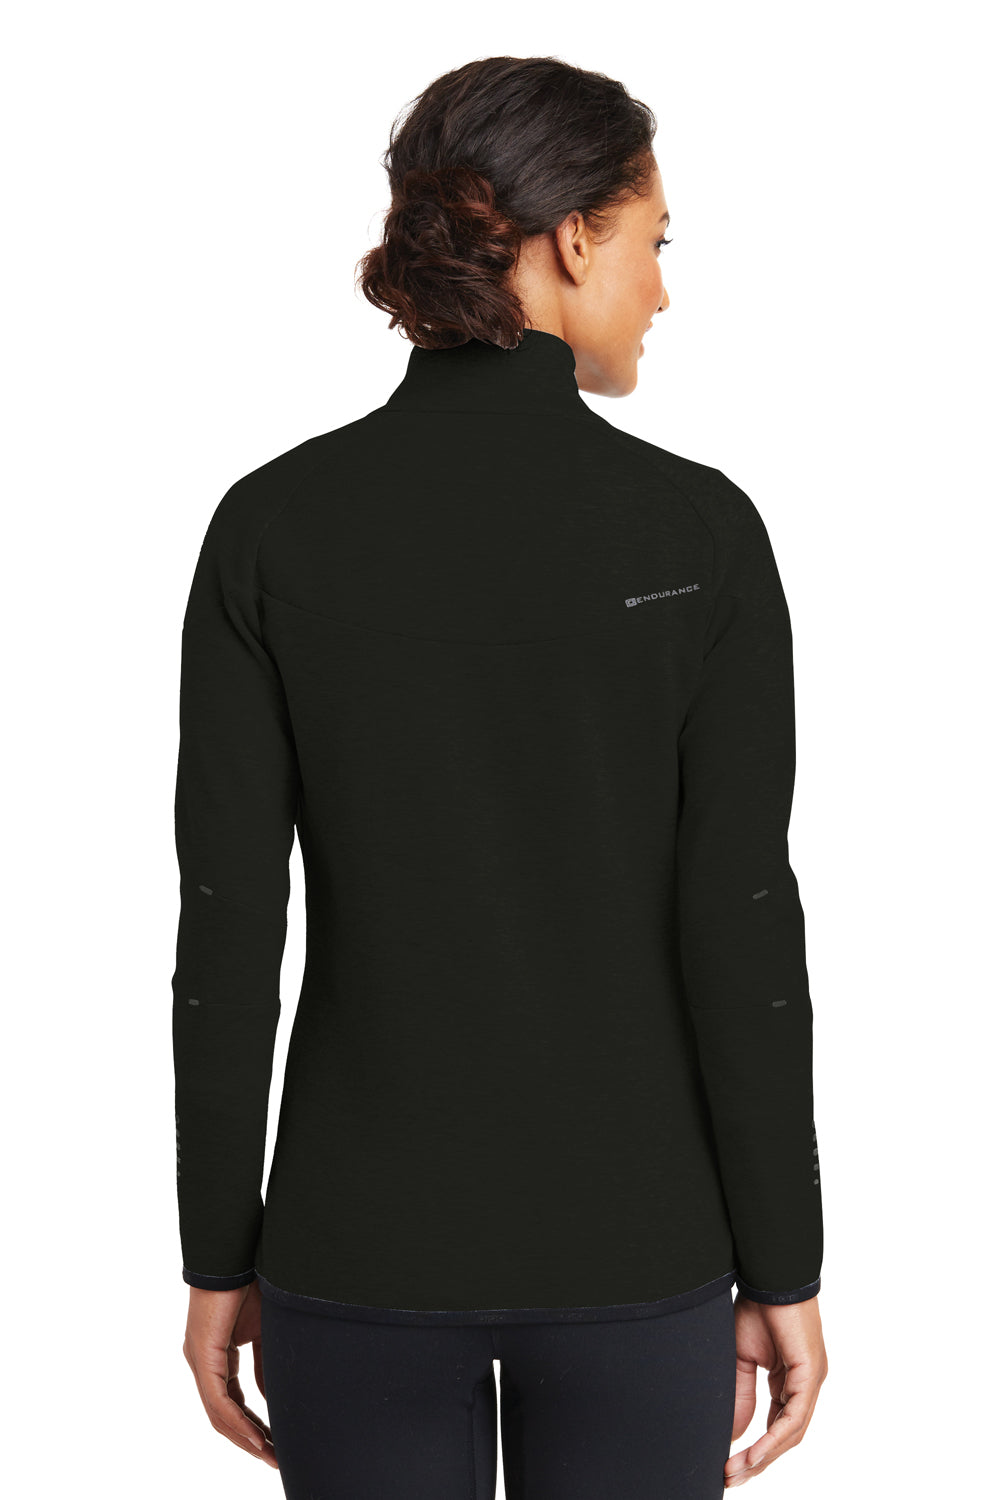 Ogio LOE503 Womens Endurance Origin Moisture Wicking Full Zip Jacket Black Back